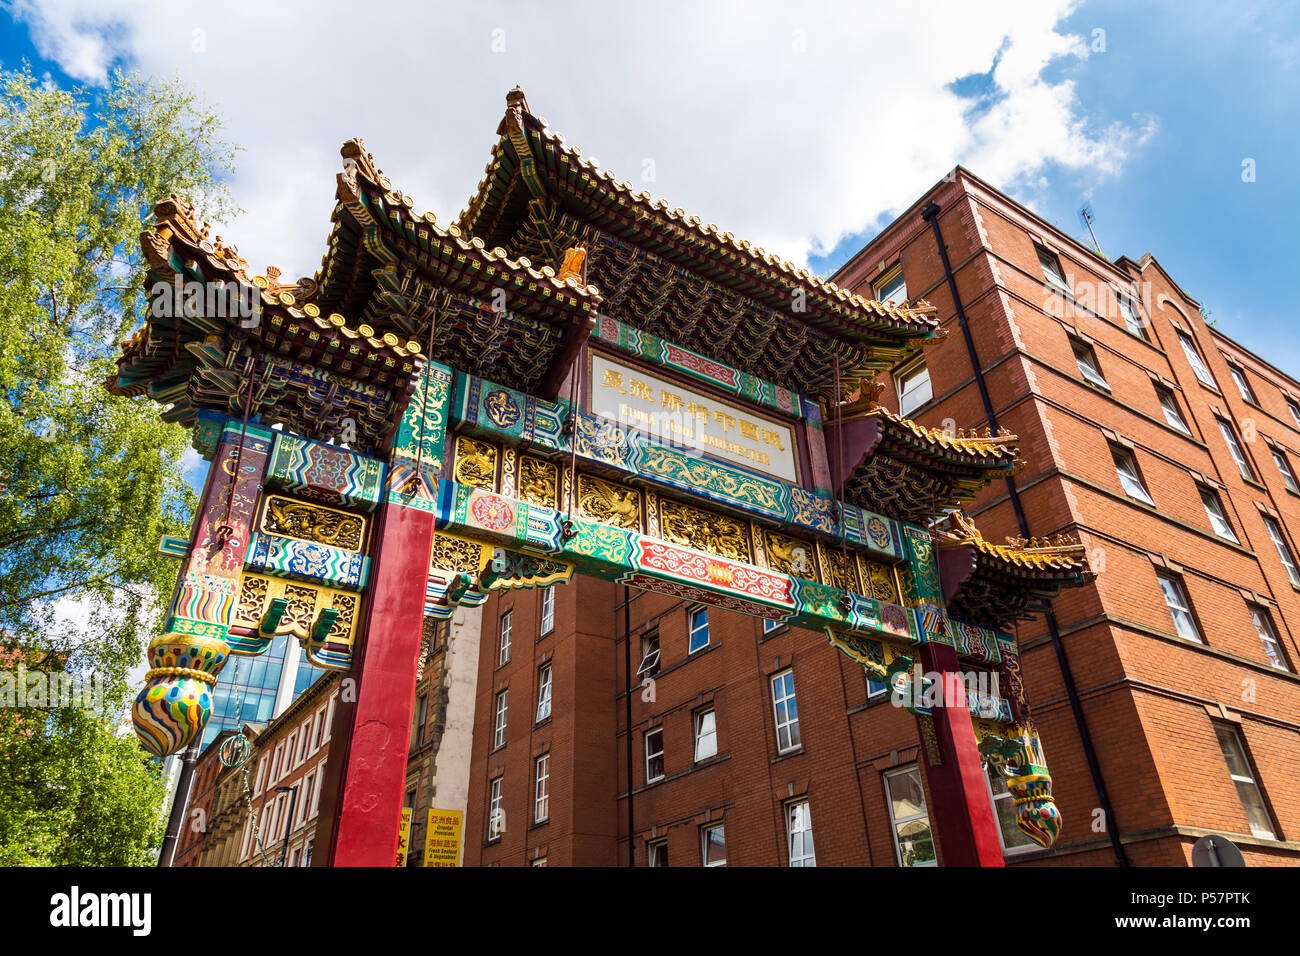 Chinatown gate, grande arche impériale de Beijing doués, Manchester, UK Banque D'Images